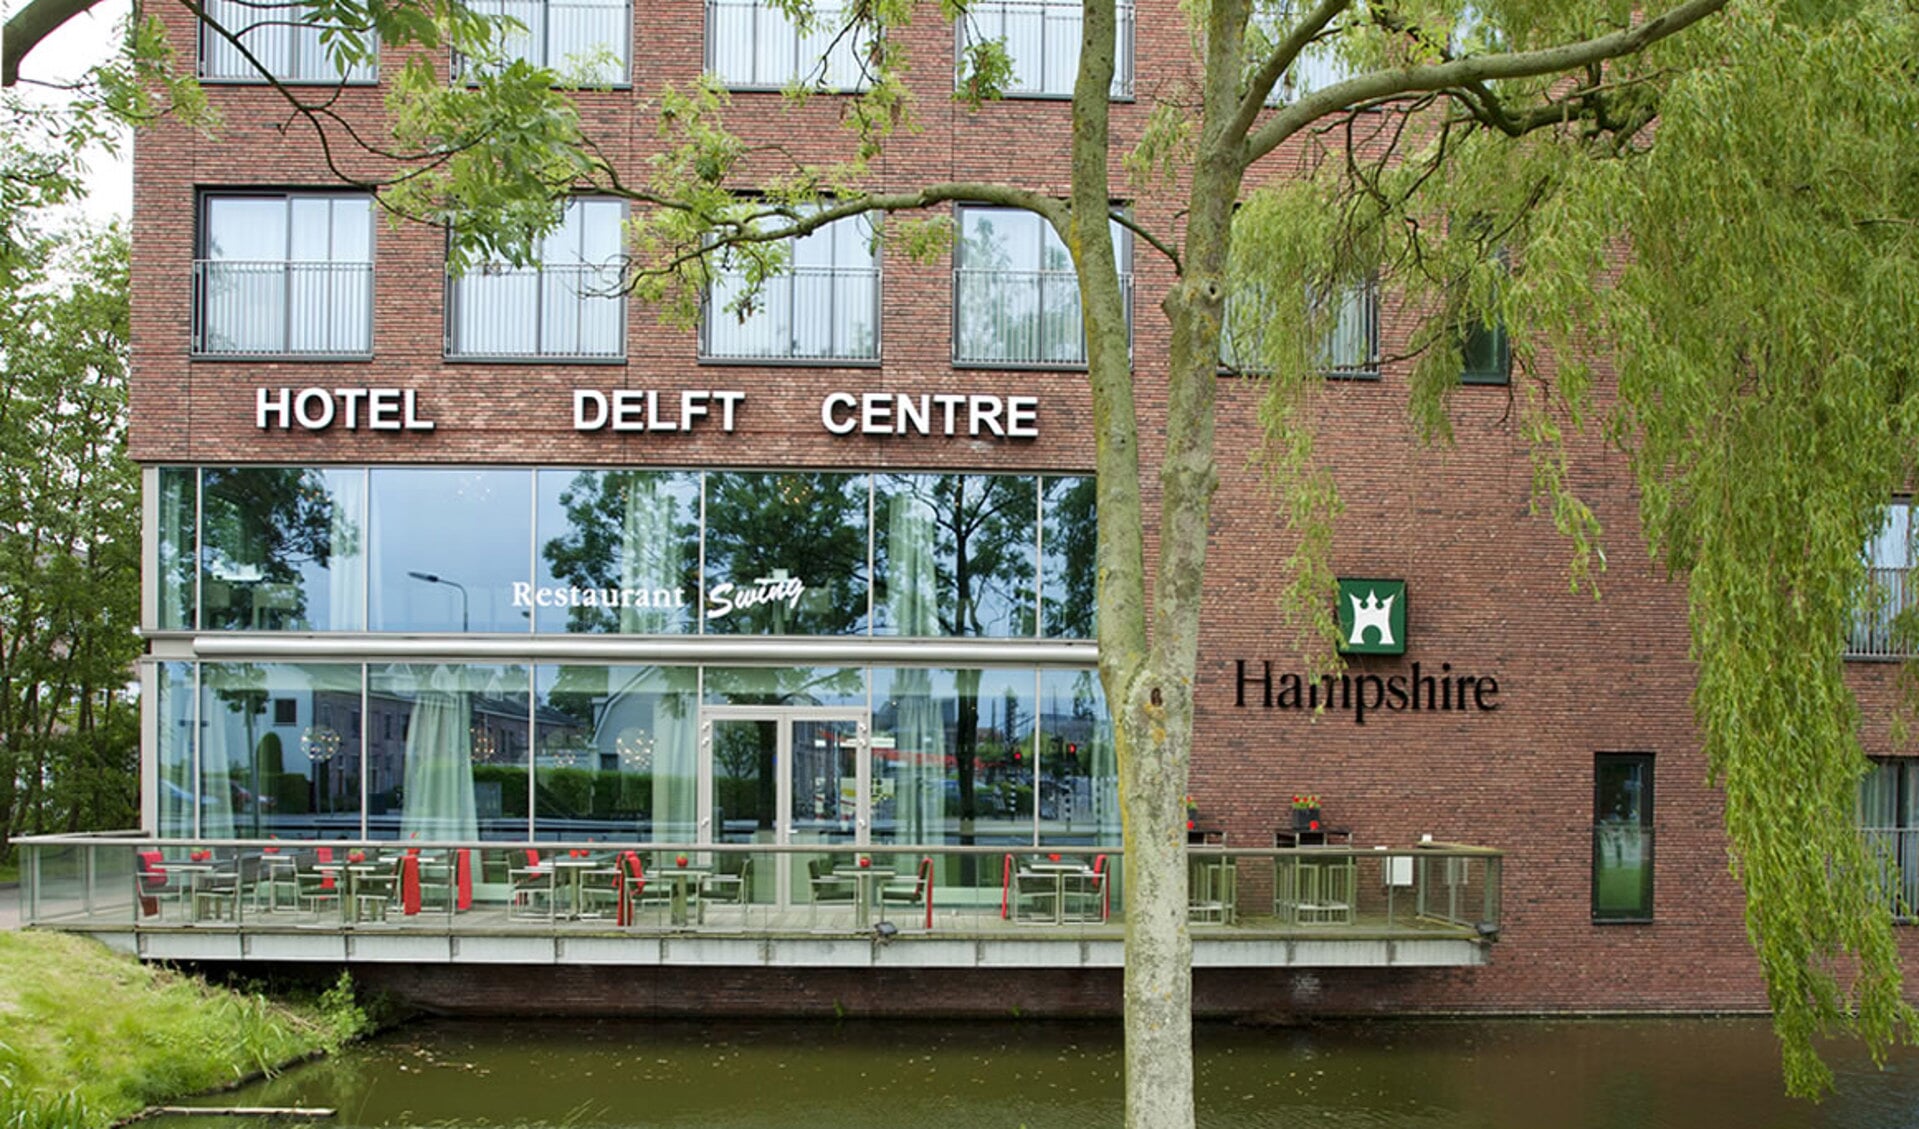 Maandag 9 mei strijkt het Alzheimer Café neer in het in het Hampshire Hotel Delft Centre.